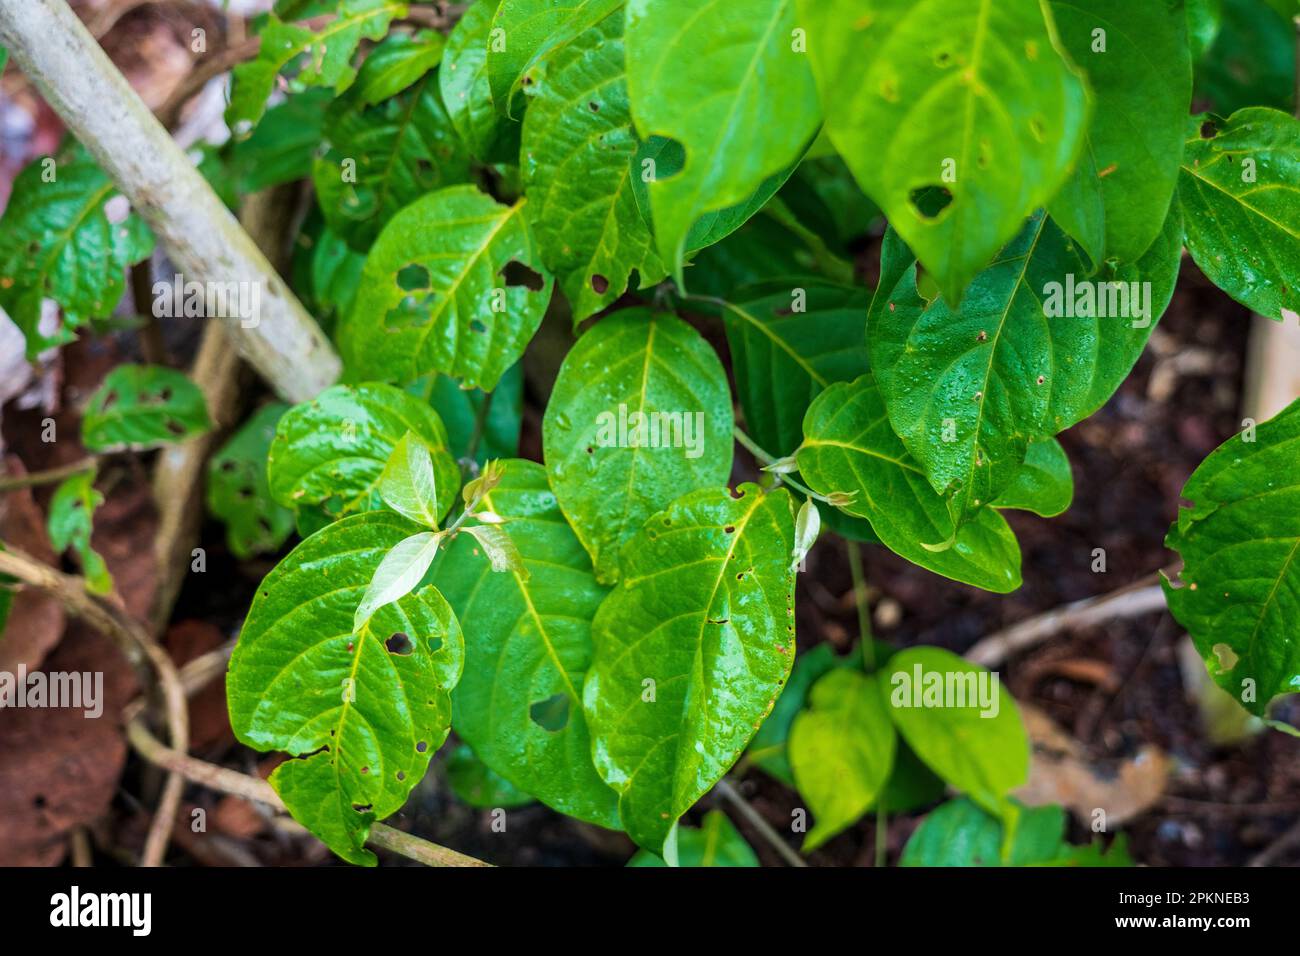 L'ayahuasca (Banisteriopsis caapi) est une plante bouillie et distillée utilisée dans la pratique sacrée et rituelle dans le bassin de l'Amazone Banque D'Images